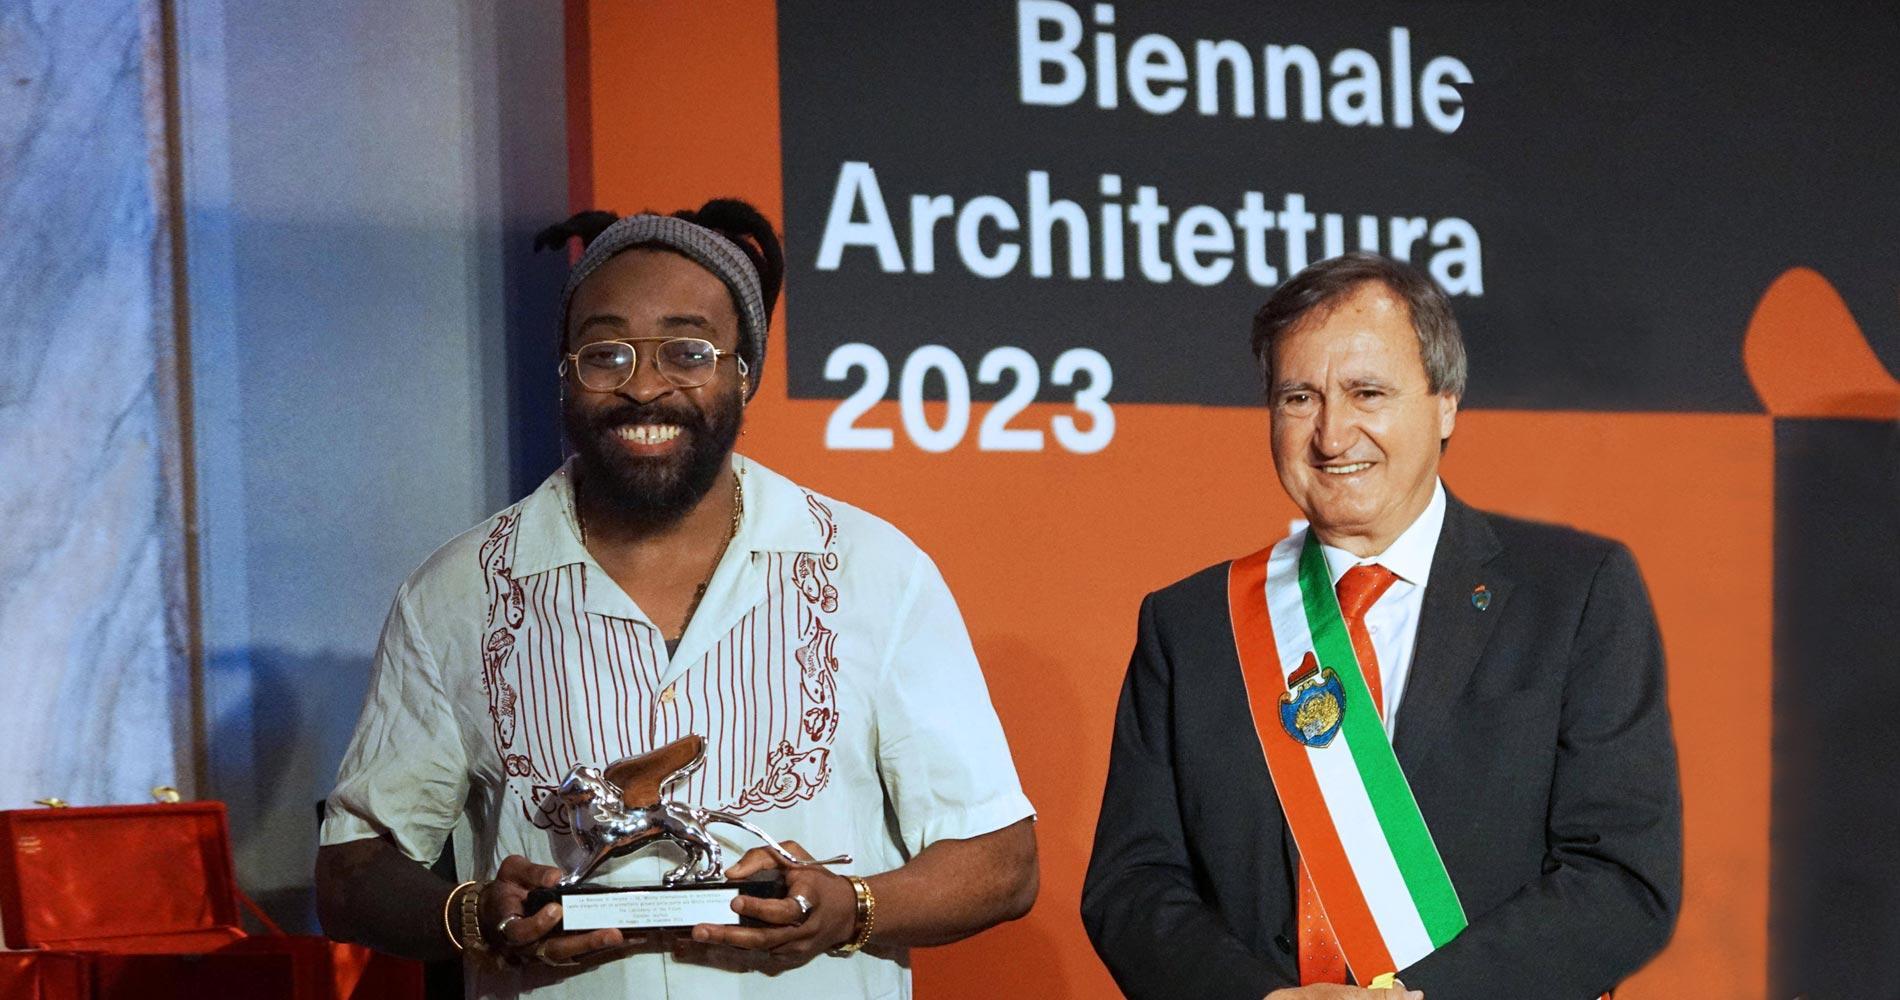 Architektur-Biennale 2023: Das globale Afrika-Labor der Zukunft